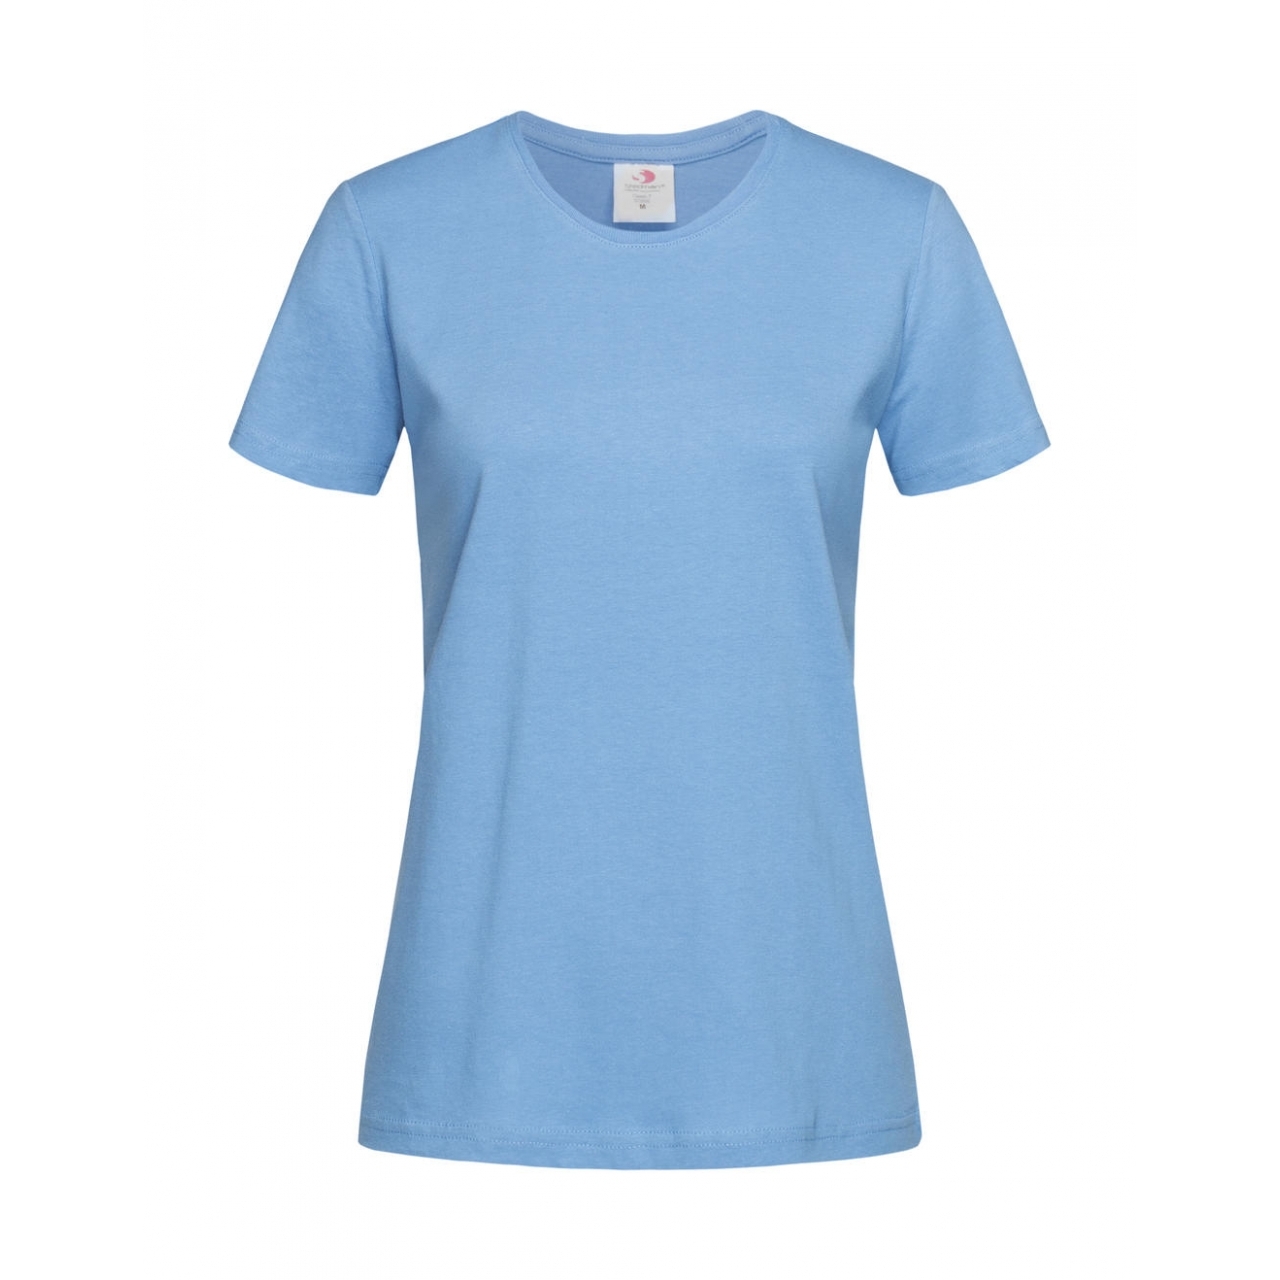 Tričko dámské Stedman Fitted s kulatým výstřihem - světle modré, M